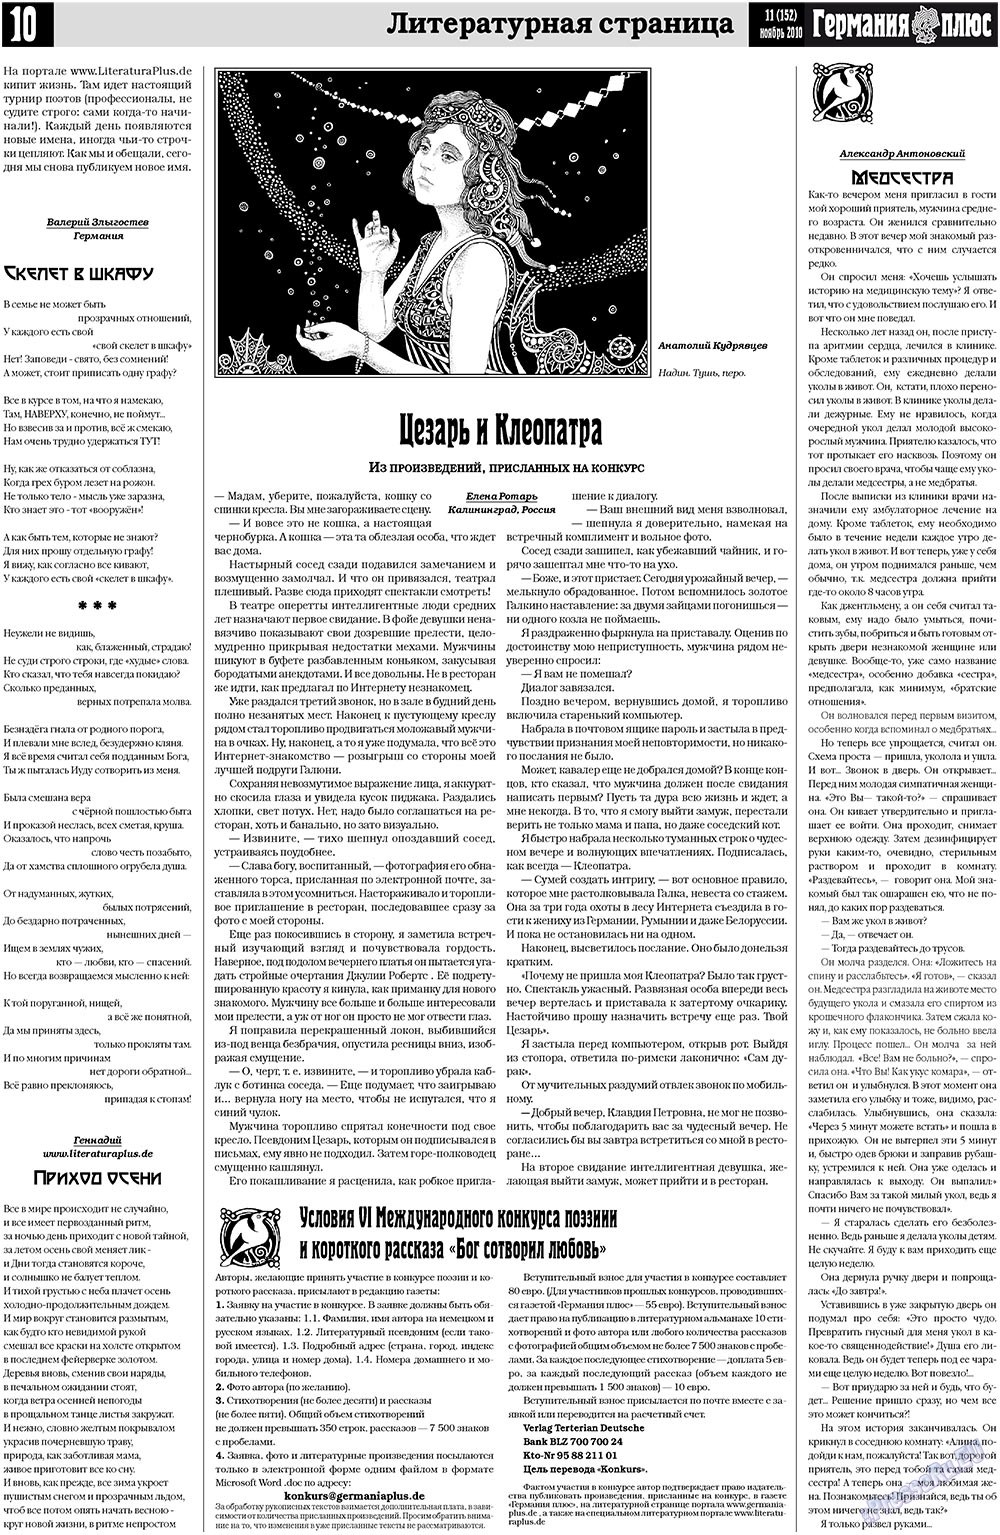 Германия плюс (газета). 2010 год, номер 11, стр. 10